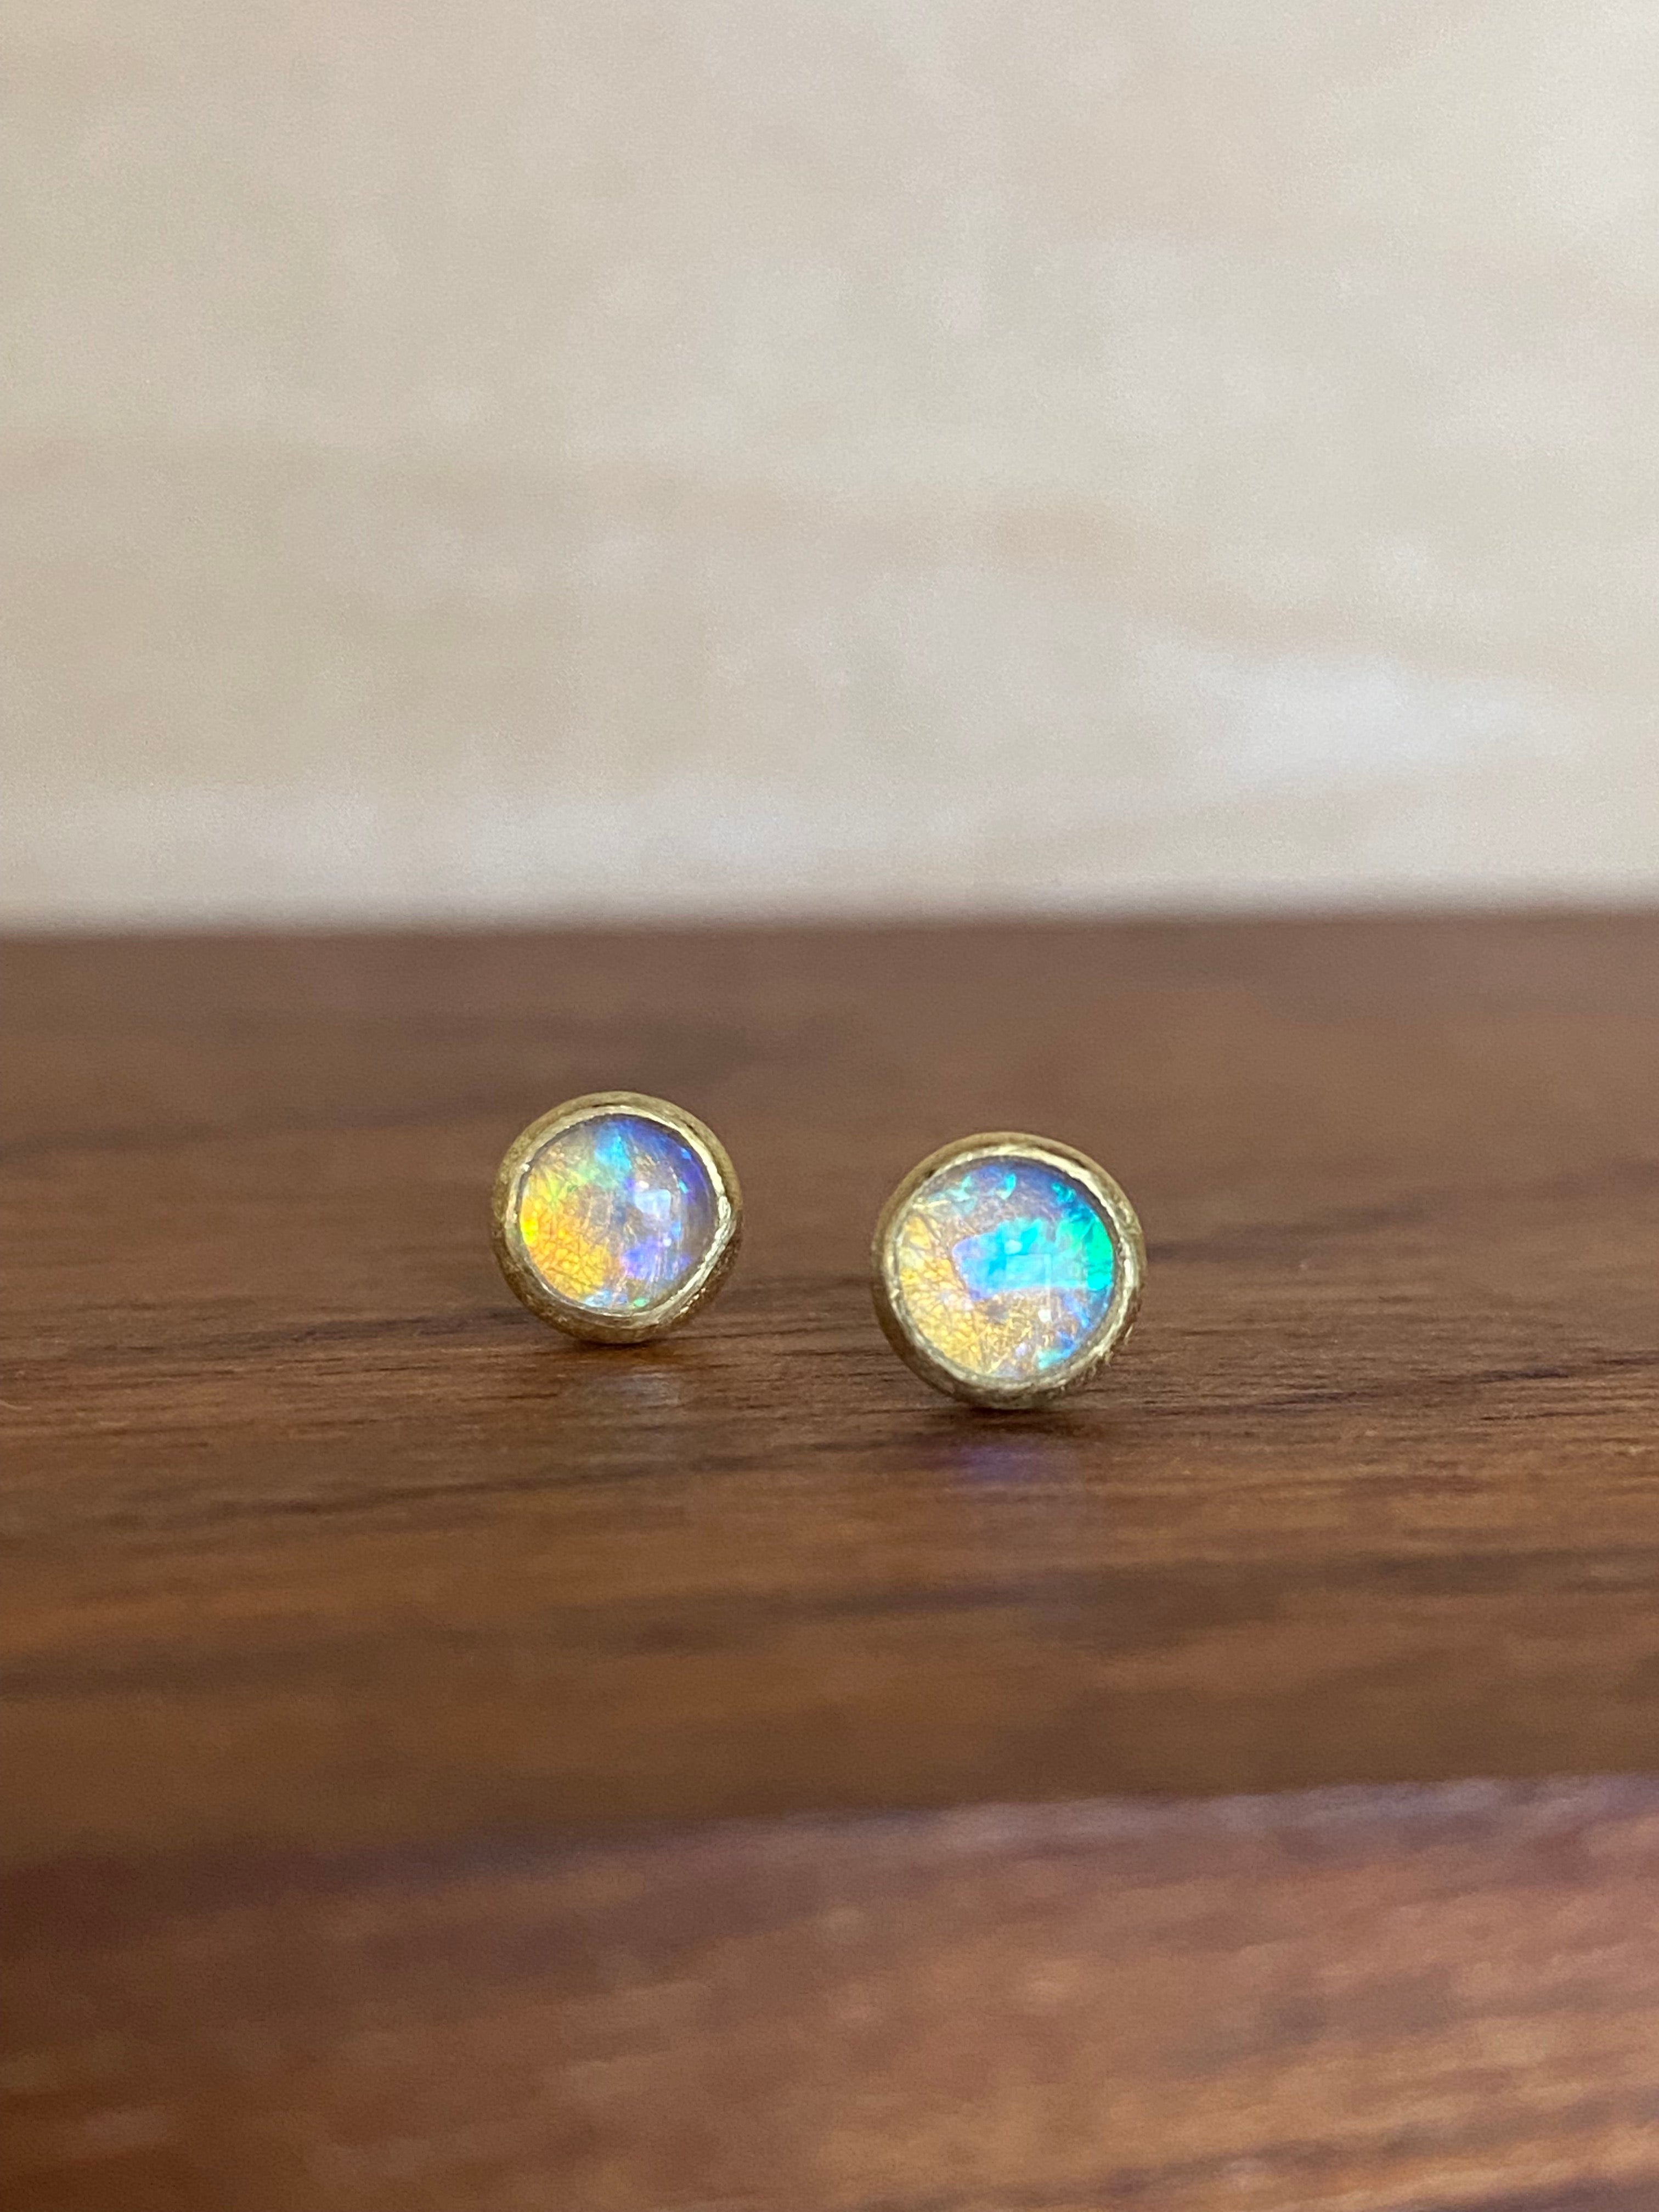 Siedra Loeffler- Round Opal Stud Earrings with Blue Hue